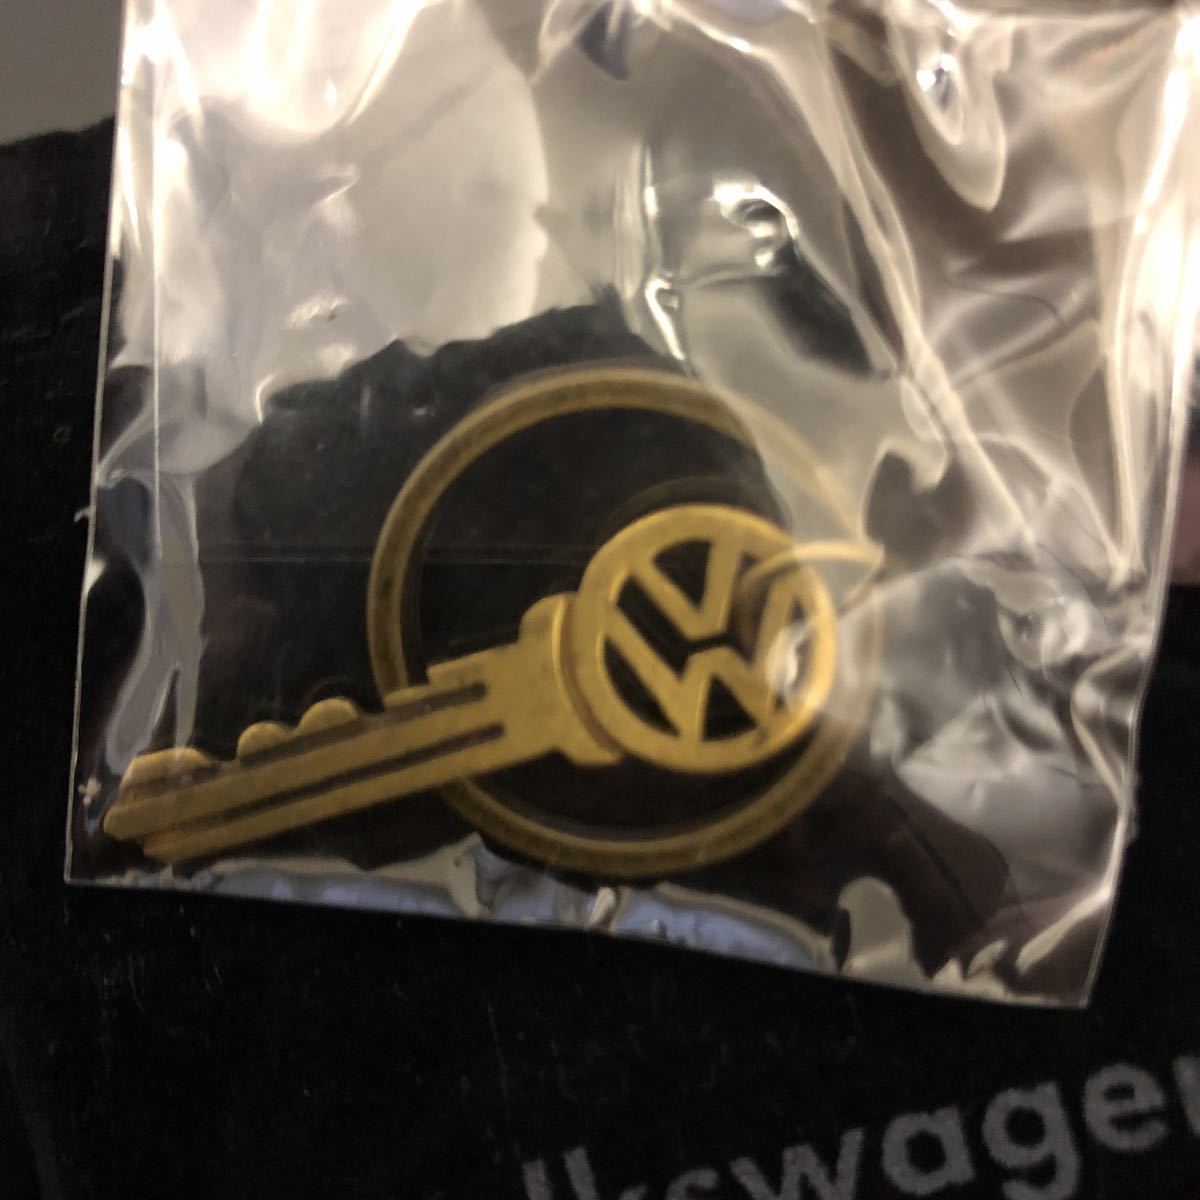  unused / unopened * Volkswagen retro сhick . key holder key ring Volkswagen* original regular goods 